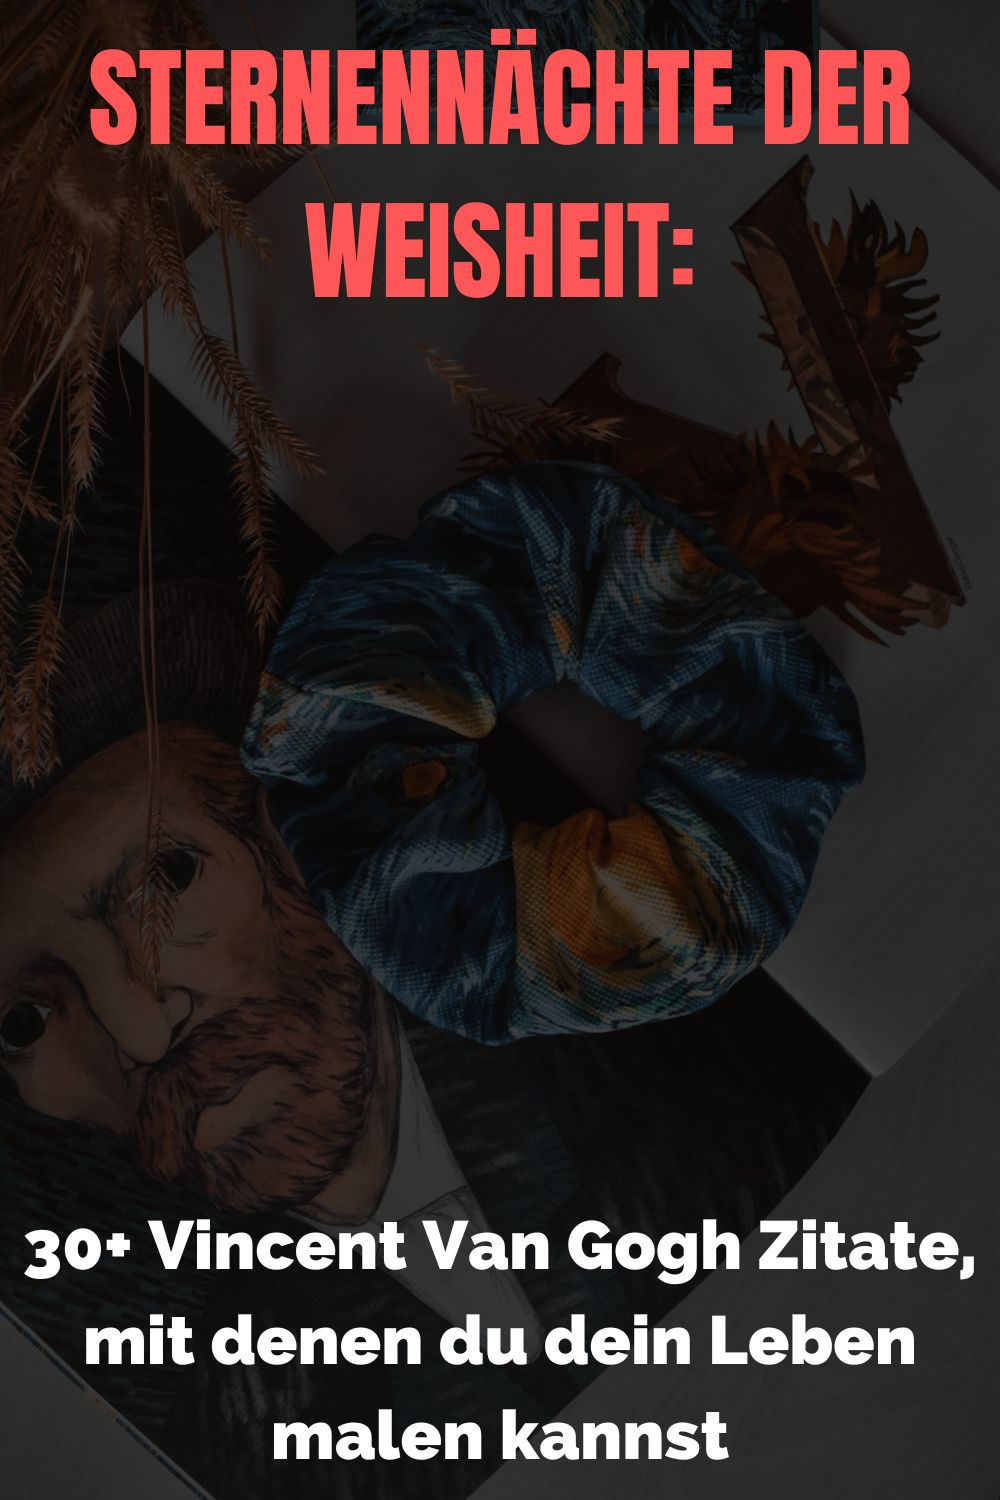 Sternennaechte-der-Weisheit-30-Vincent-Van-Gogh-Zitate-mit-denen-du-dein-Leben-malen-kannst